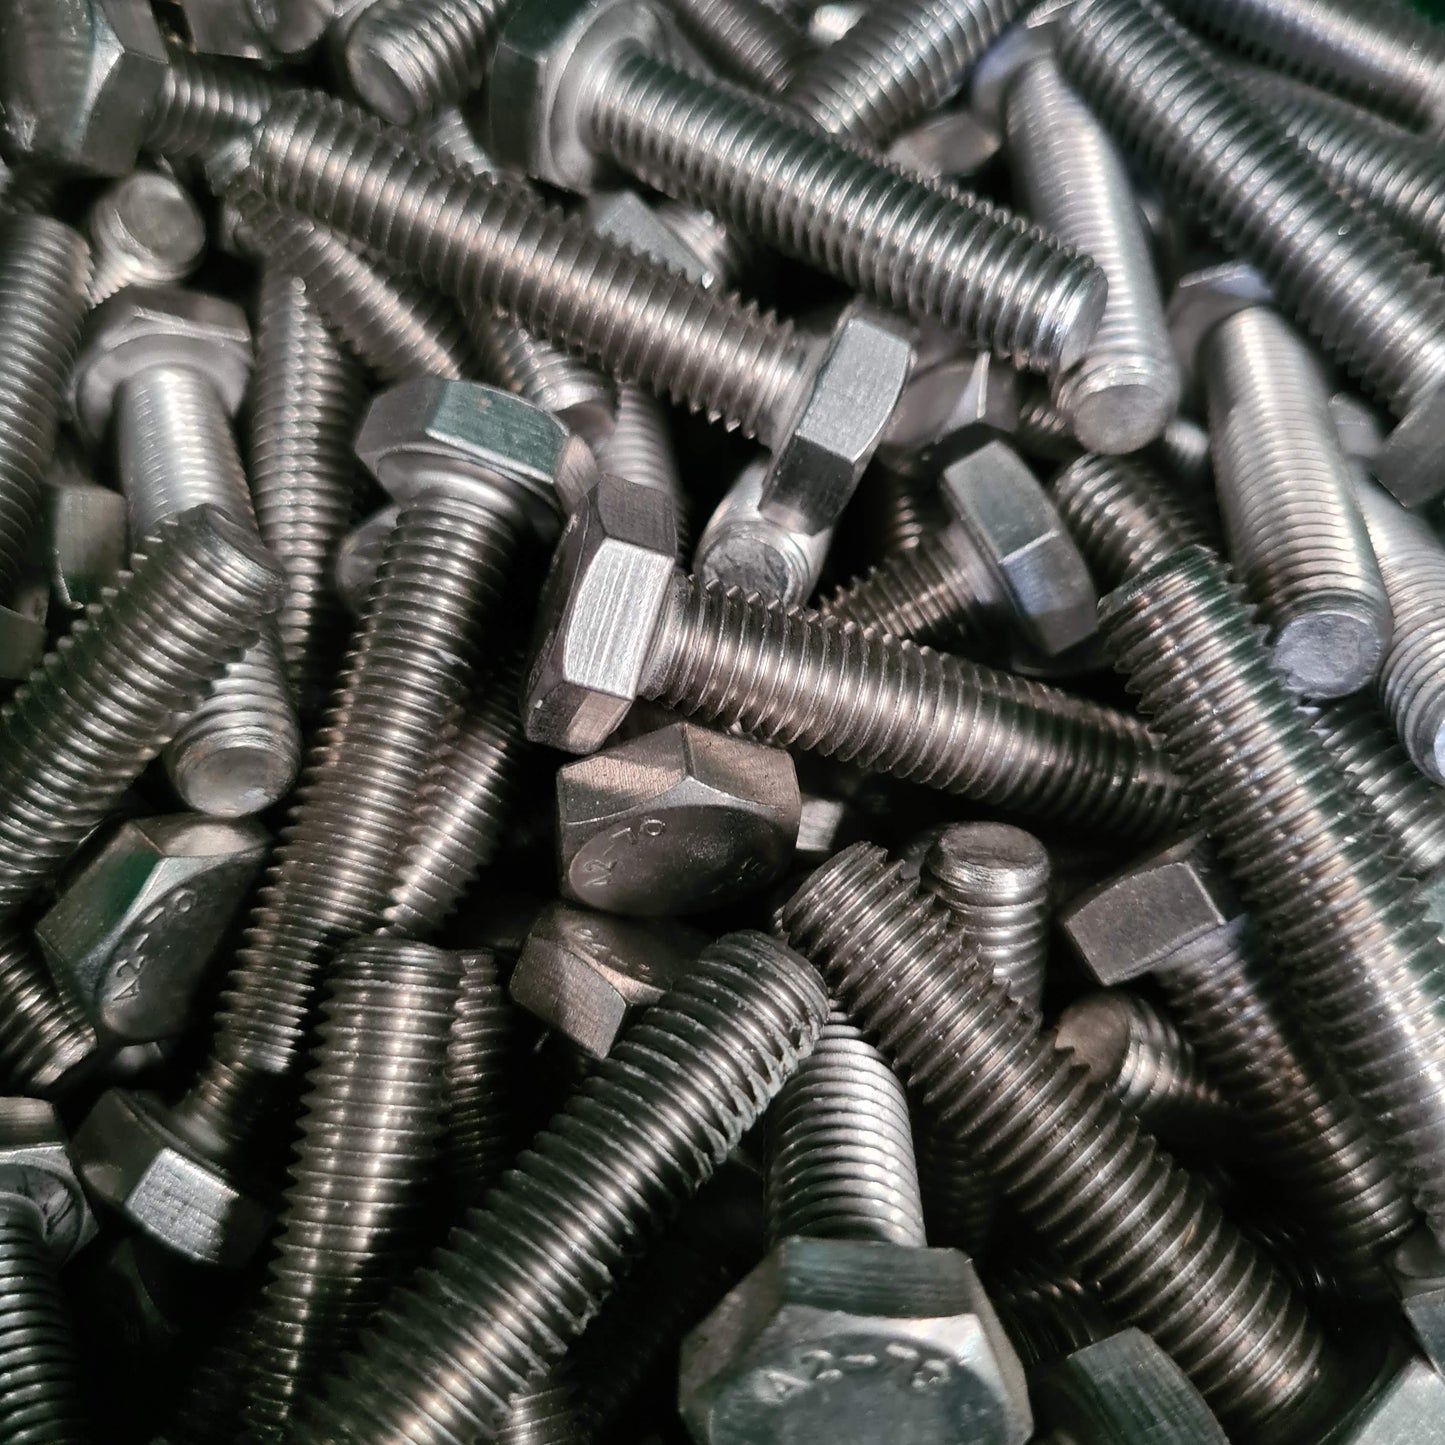 Stainless steel 304 or 316 het hex head set screws